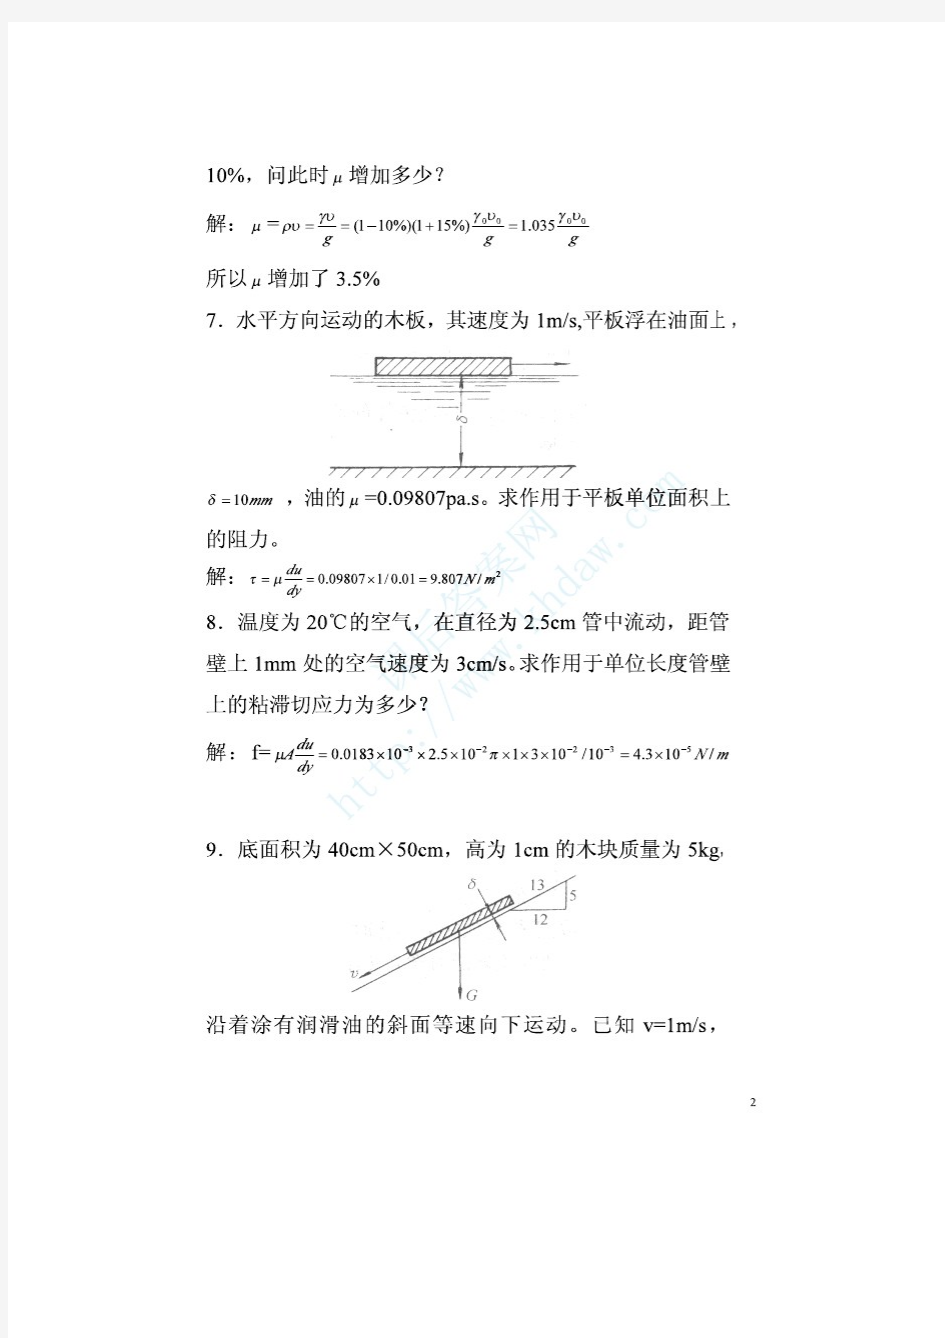 《流体力学泵与风机》第五版 (蔡增基 龙天渝 著)课后习题答案 中国建筑工业出版社